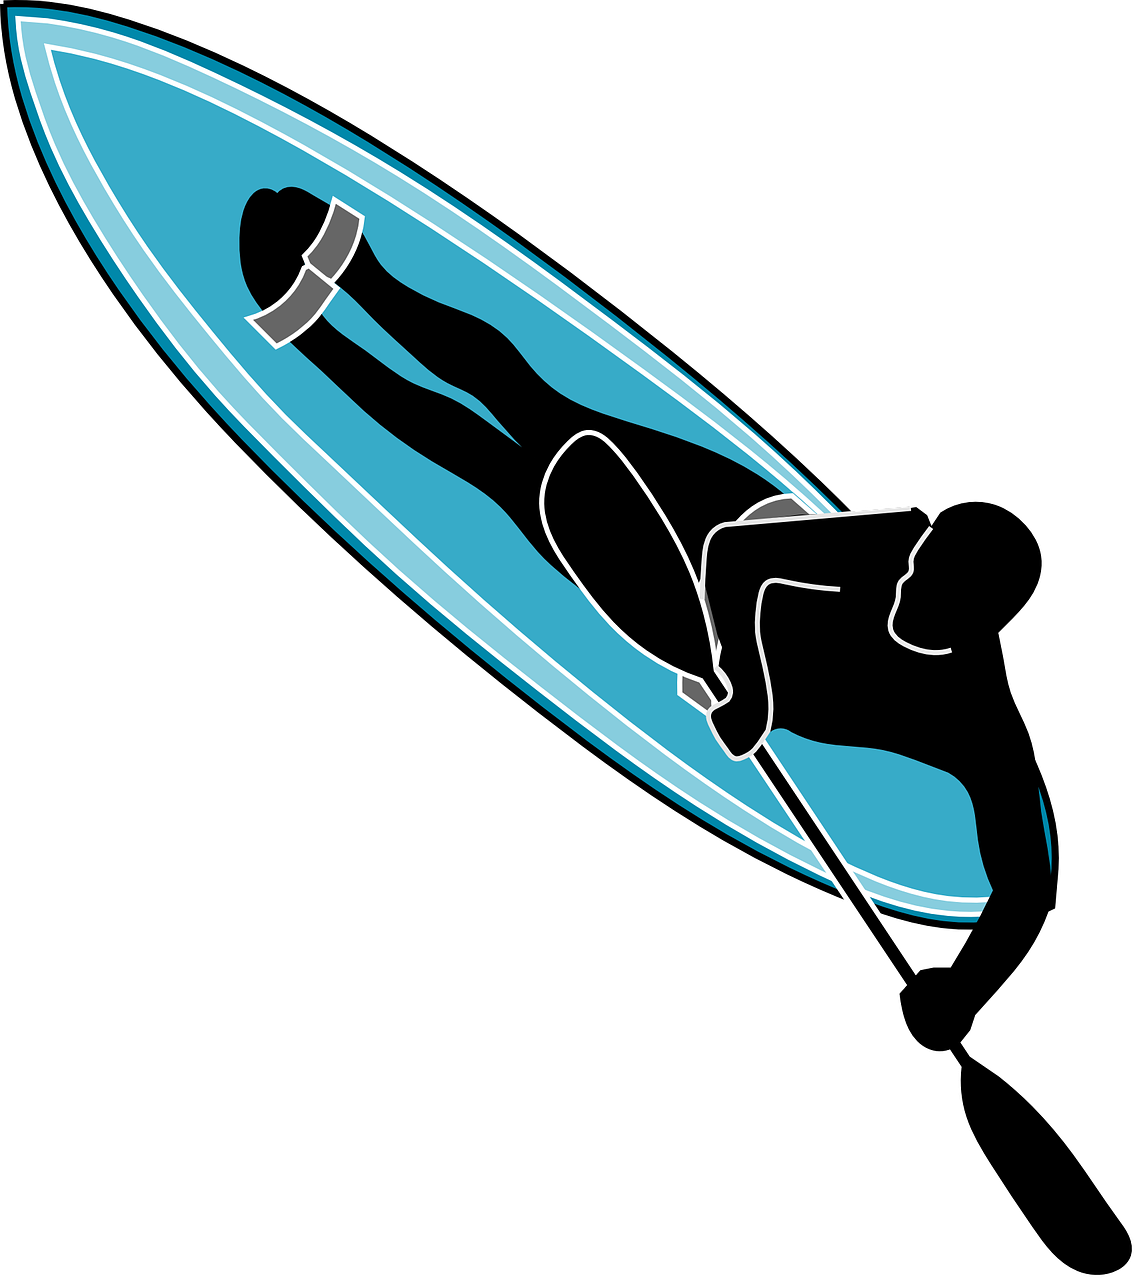 Free Image On Pixabay - Waveski Logo (1137x1280)